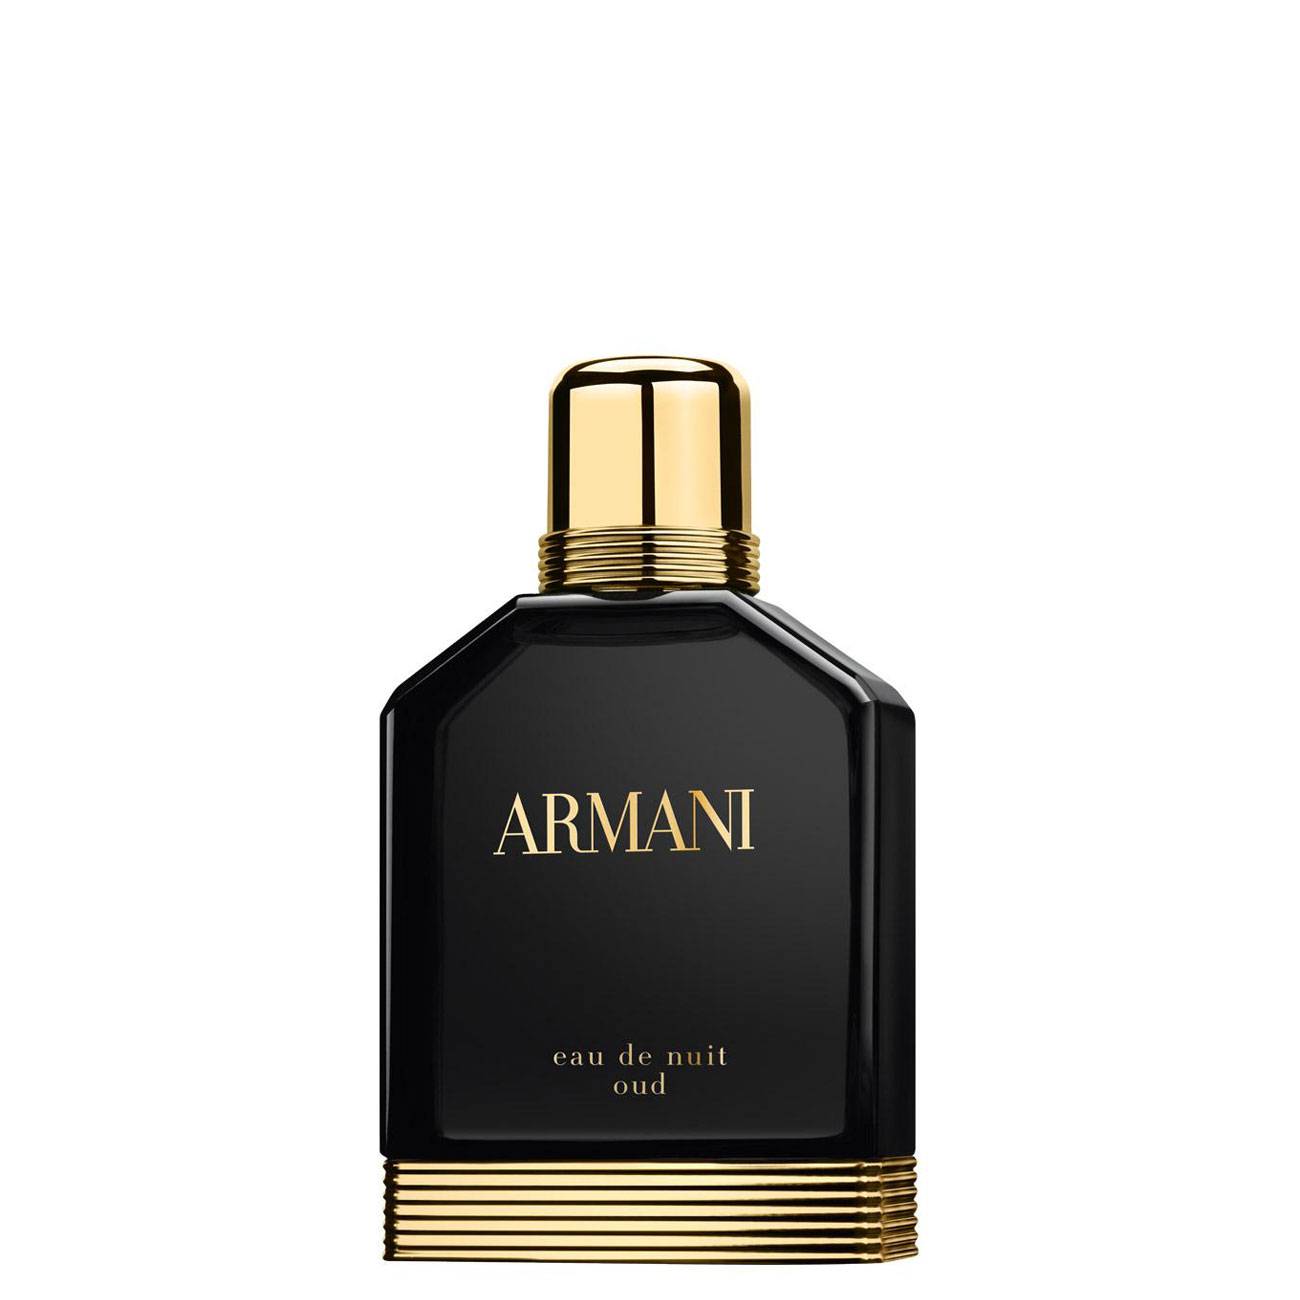 Apa de Parfum Giorgio Armani Eau de Nuit Oud 50 ML 50ml cu comanda online